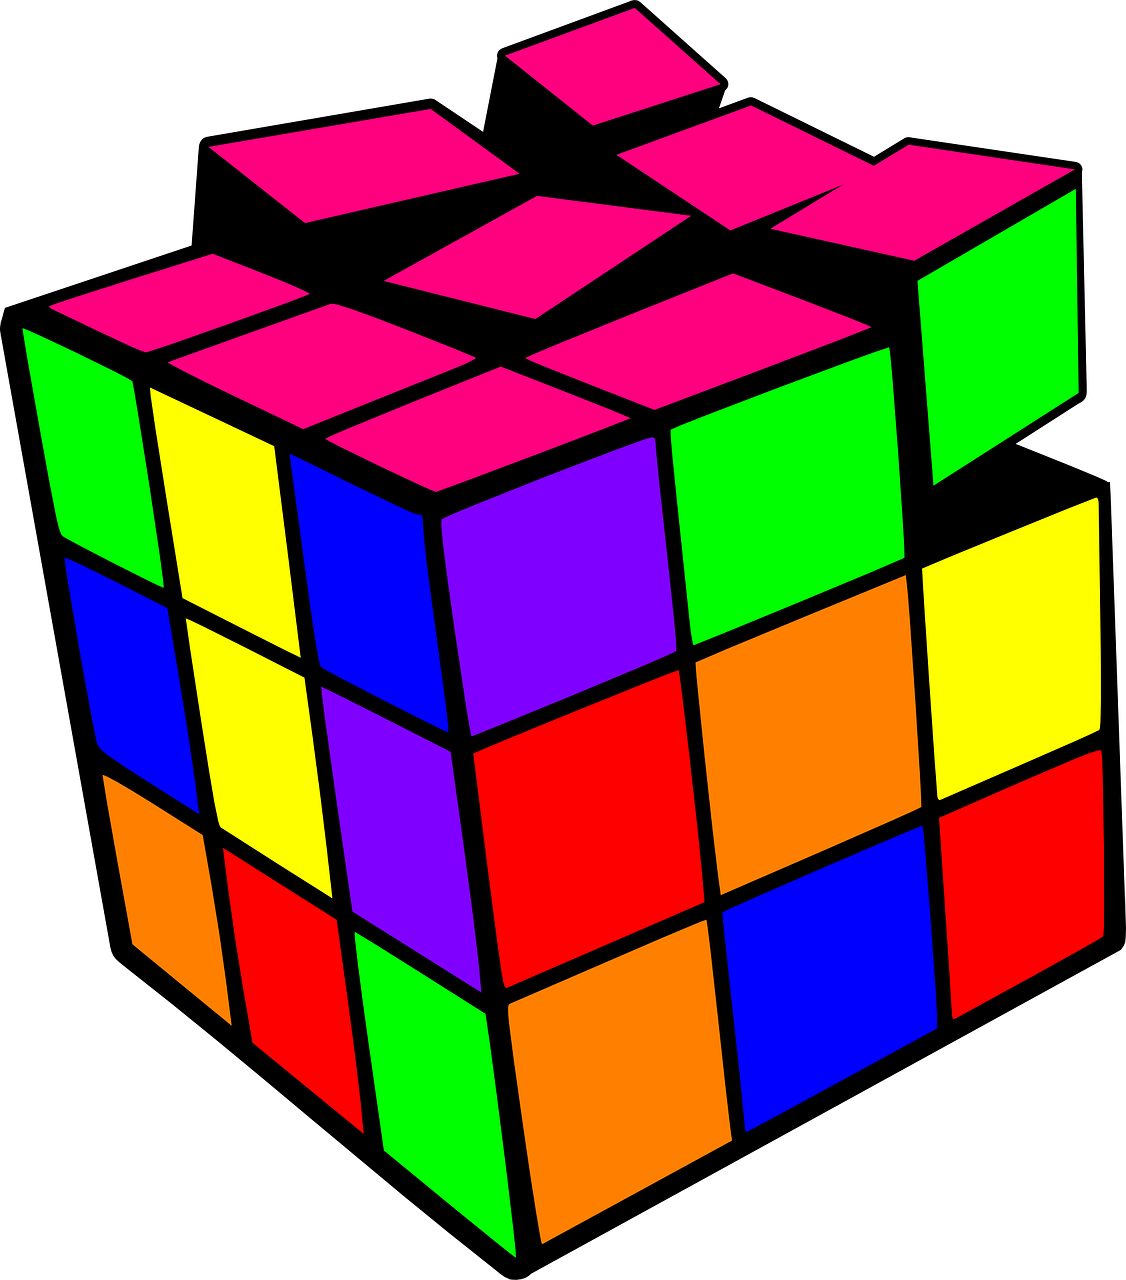 a colorful rubik cube on a black background, a raytraced image, inspired by Ernő Rubik, cubo-futurism, in style of lisa frank, aaaaaaaaaaaaaaaaaaaaaa, colored manga, 9 0 s colors and shapes